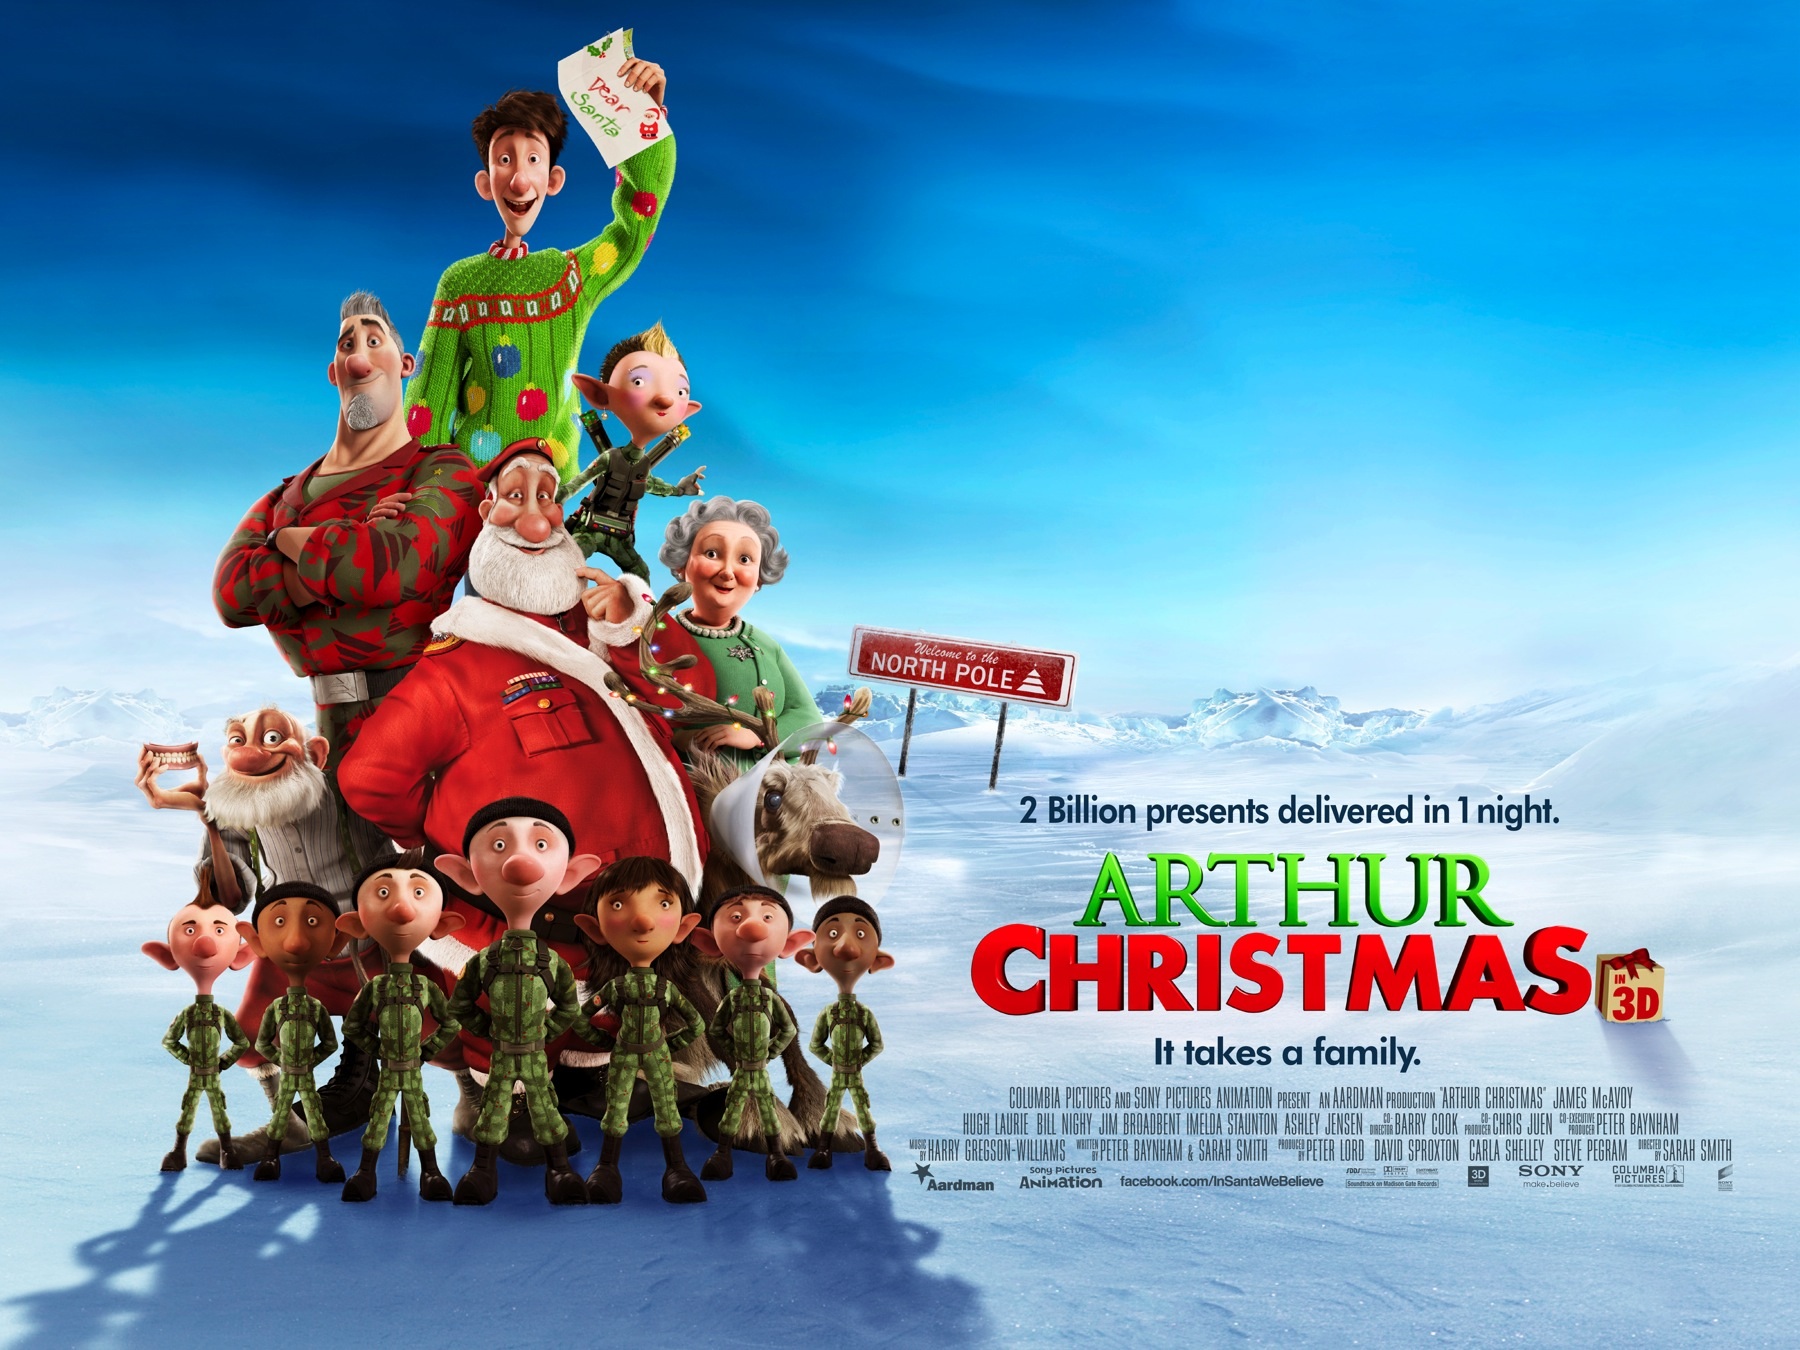 ARTHUR CHRISTMAS (2011)